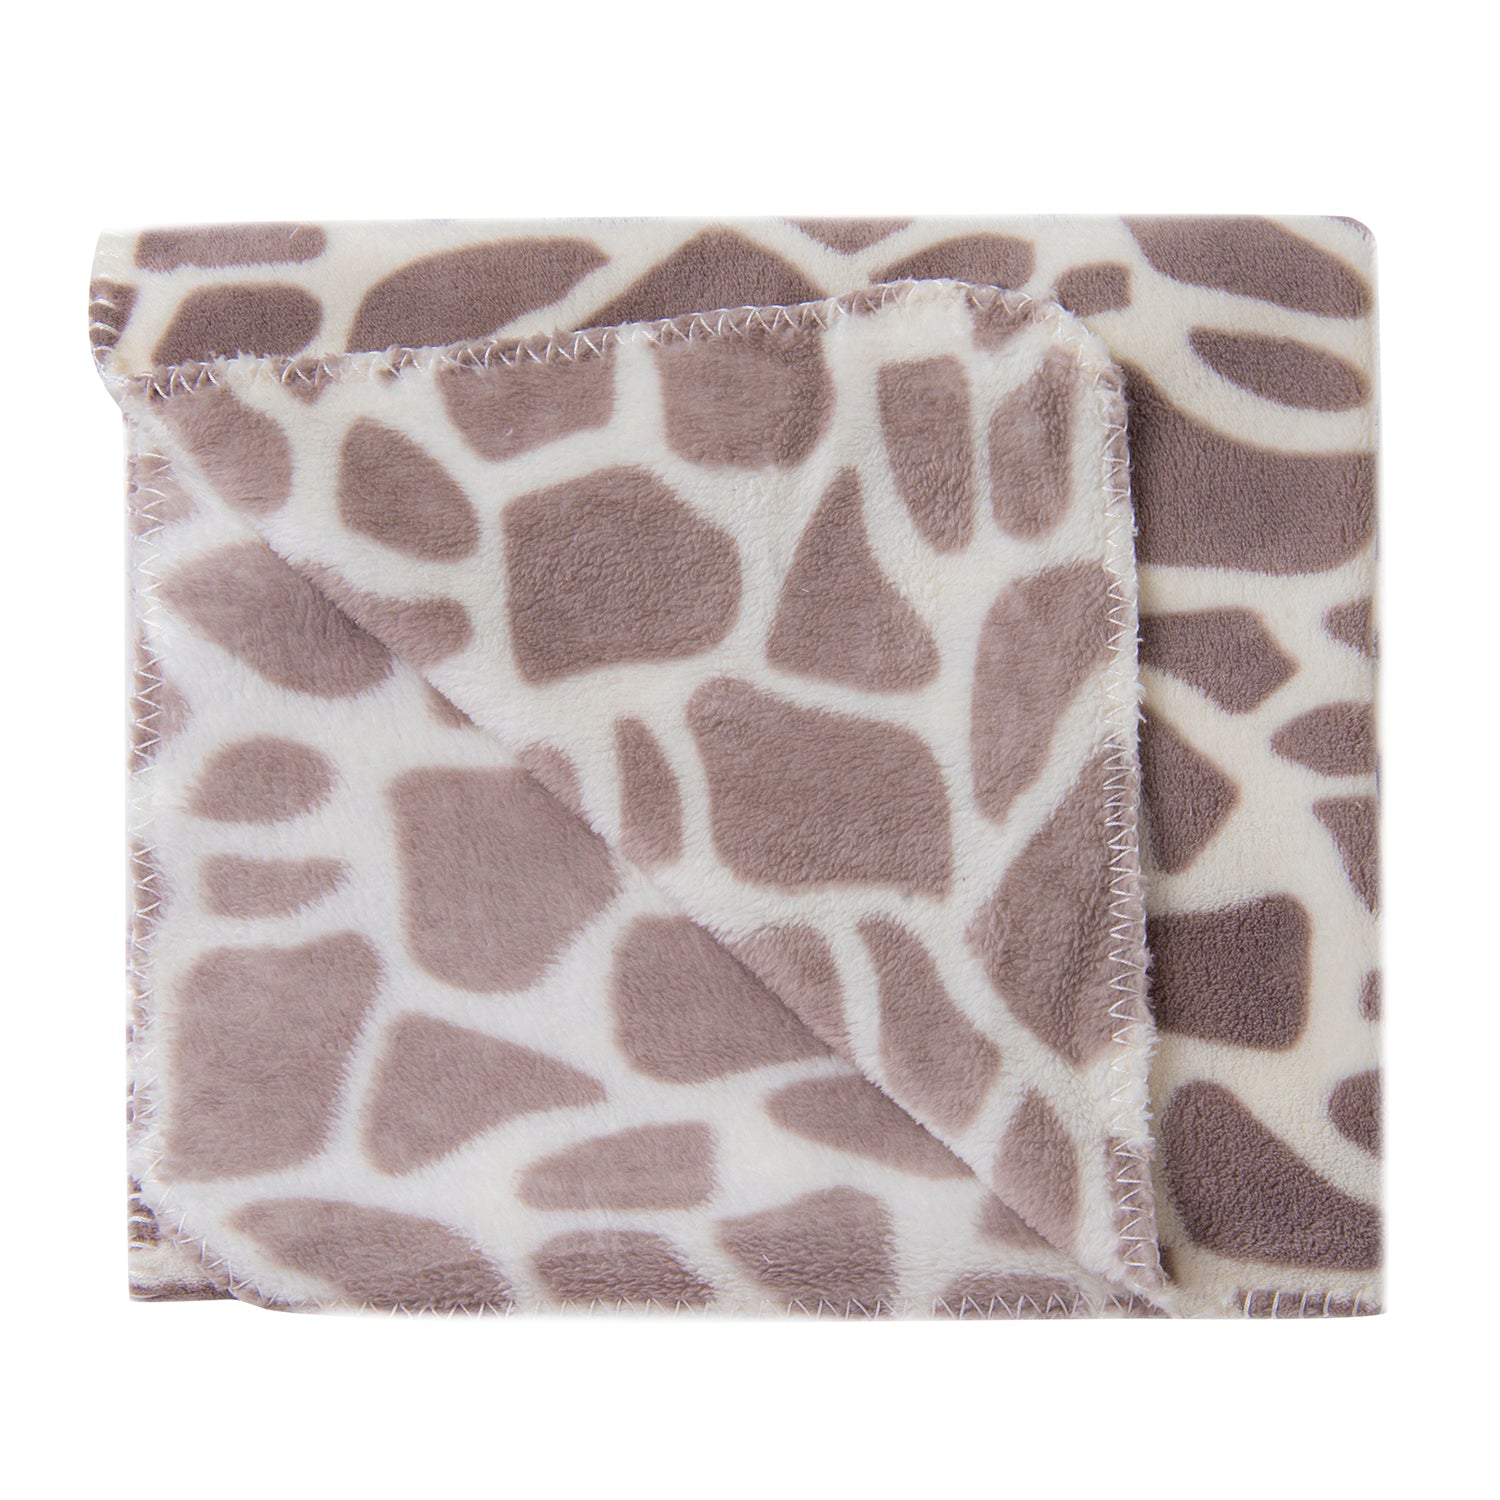 Giraffe Spots Soft Cozy Plush Toy Blanket Grey - Baby Moo